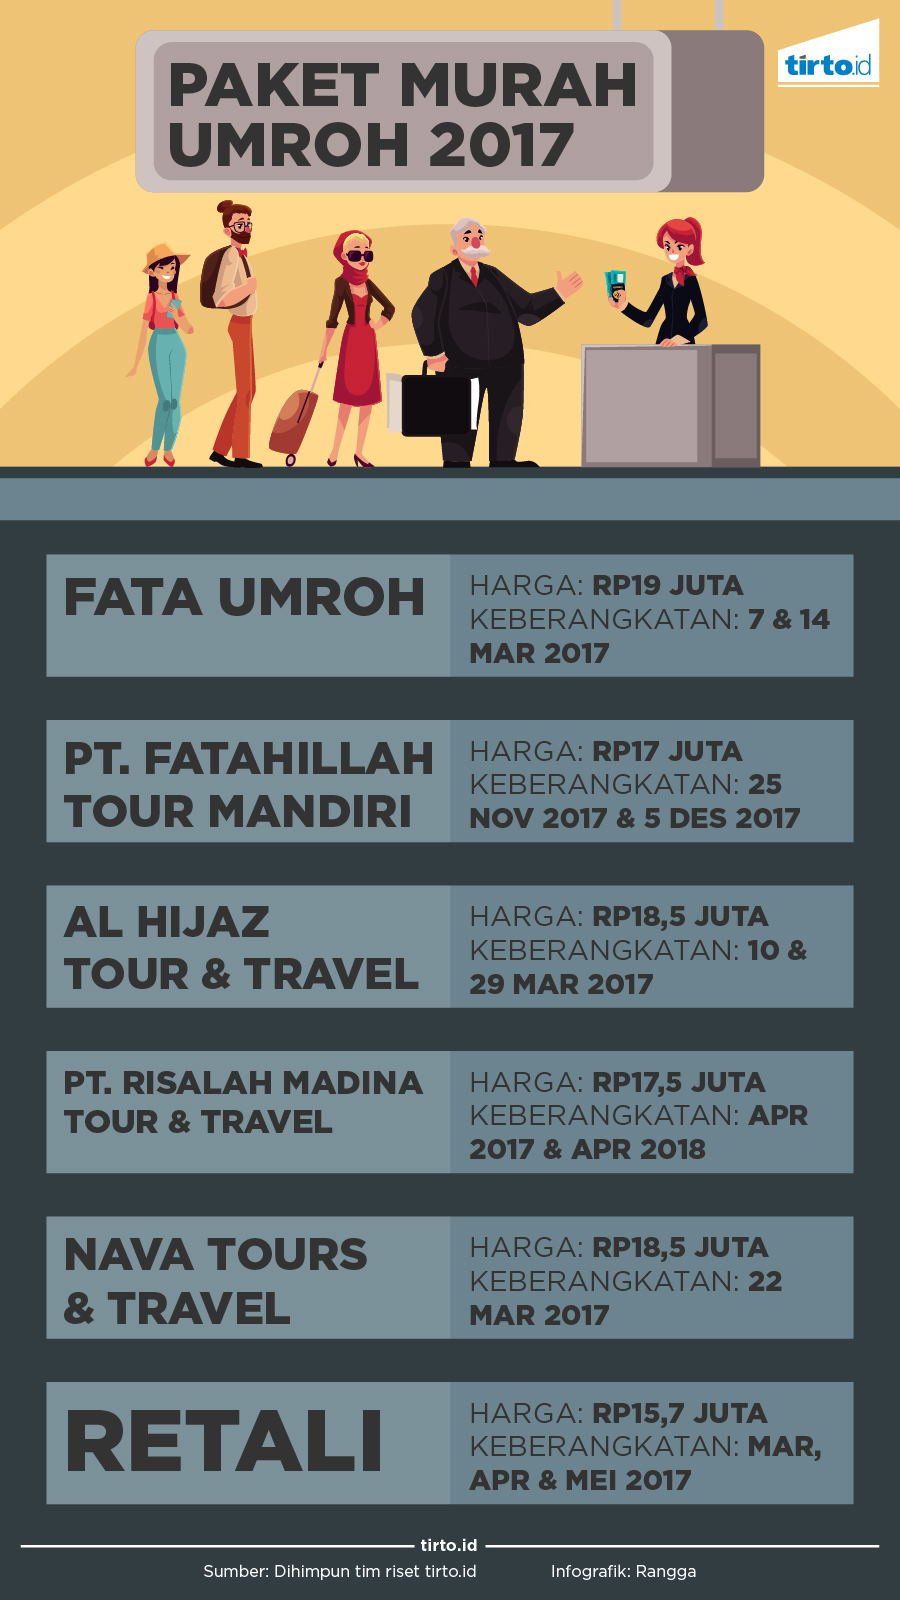 Infografik Paket Umrah 2017